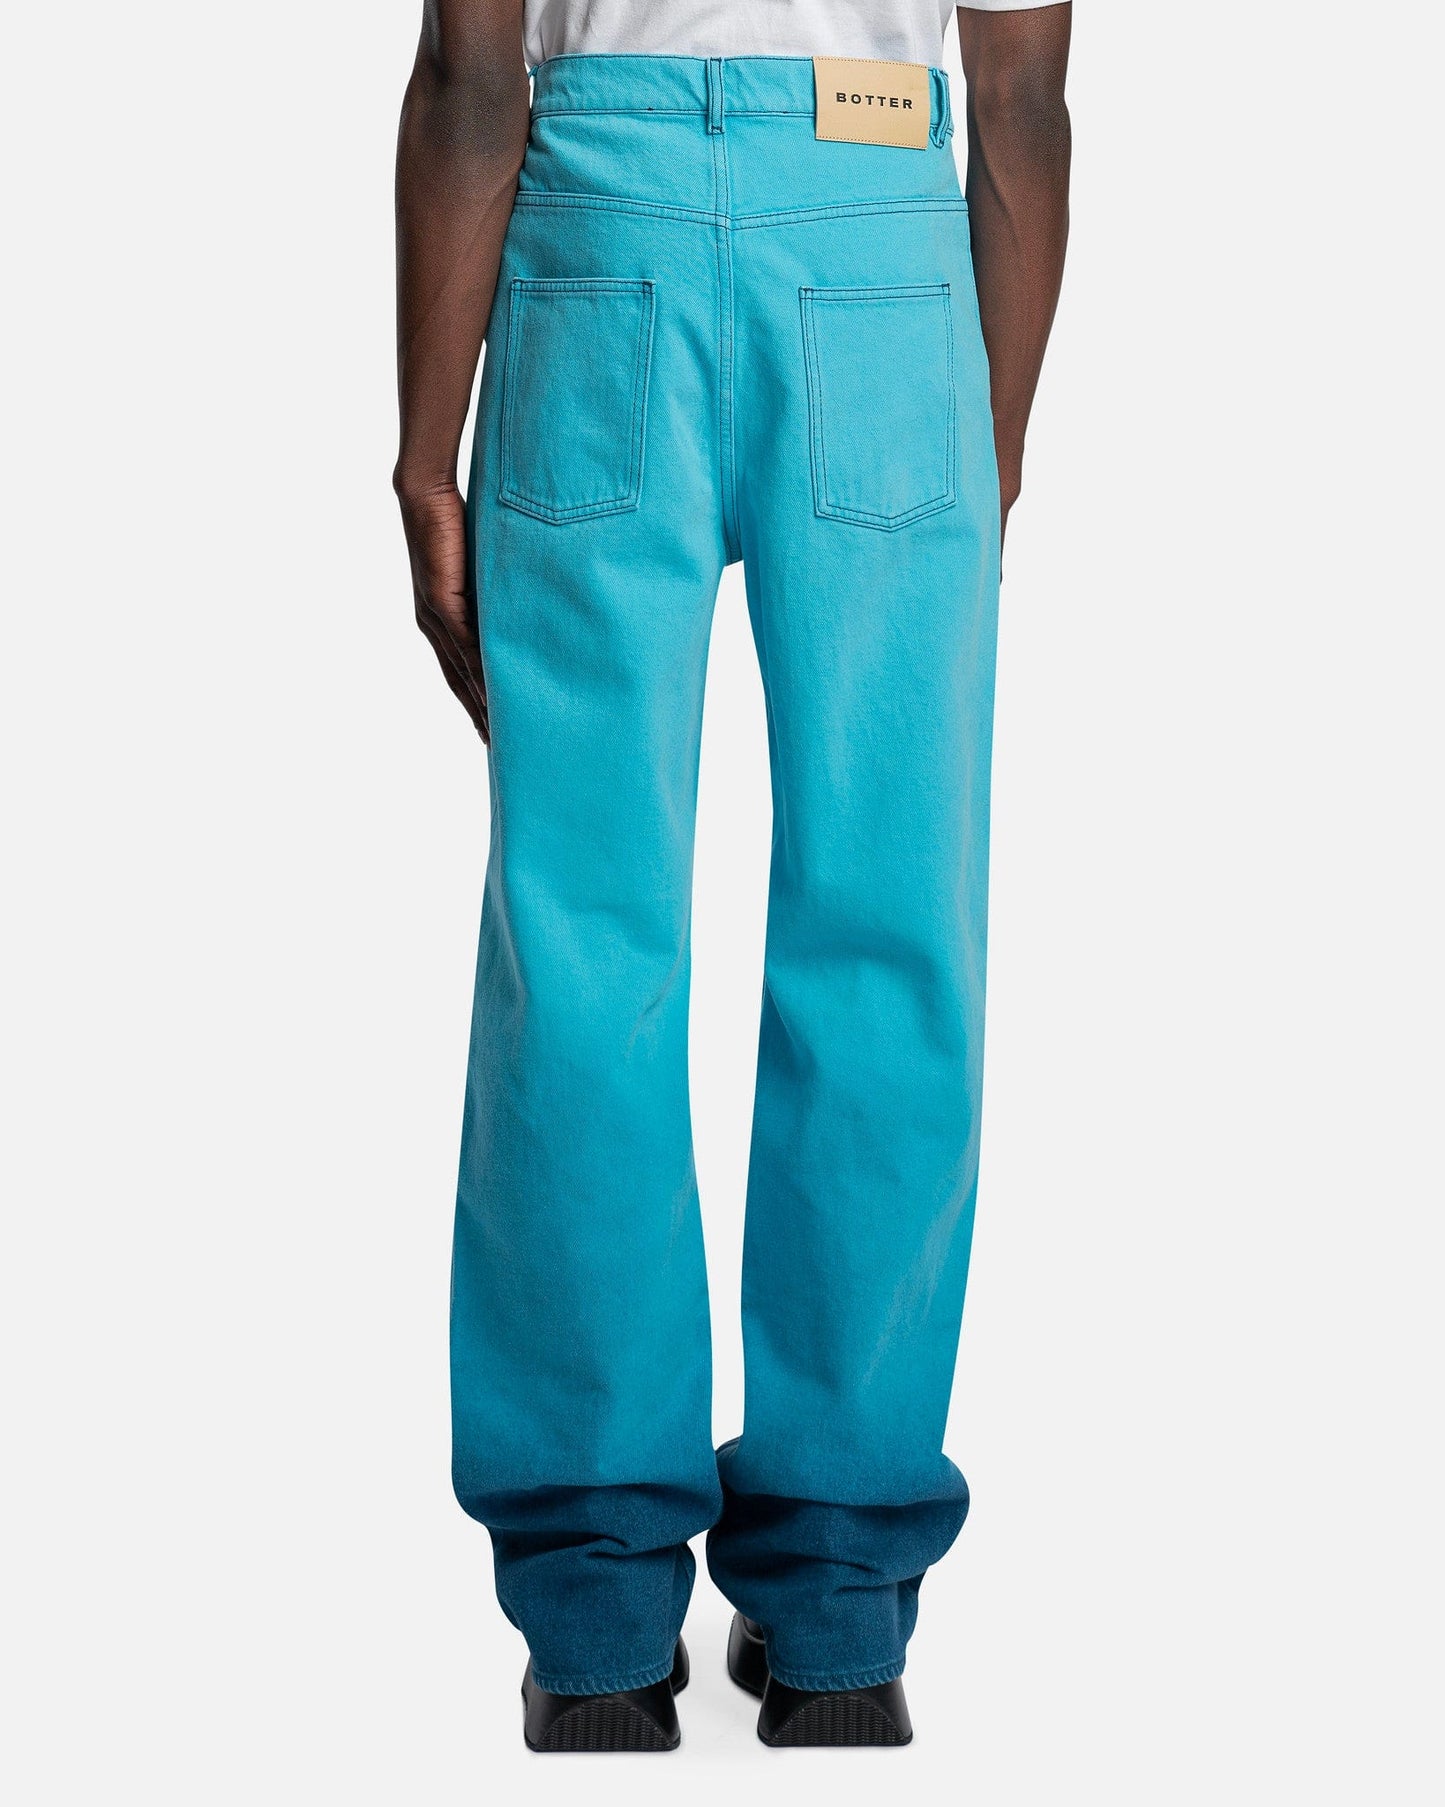 Botter Men's Jeans Denim Trousers in Botter Blue Gradient